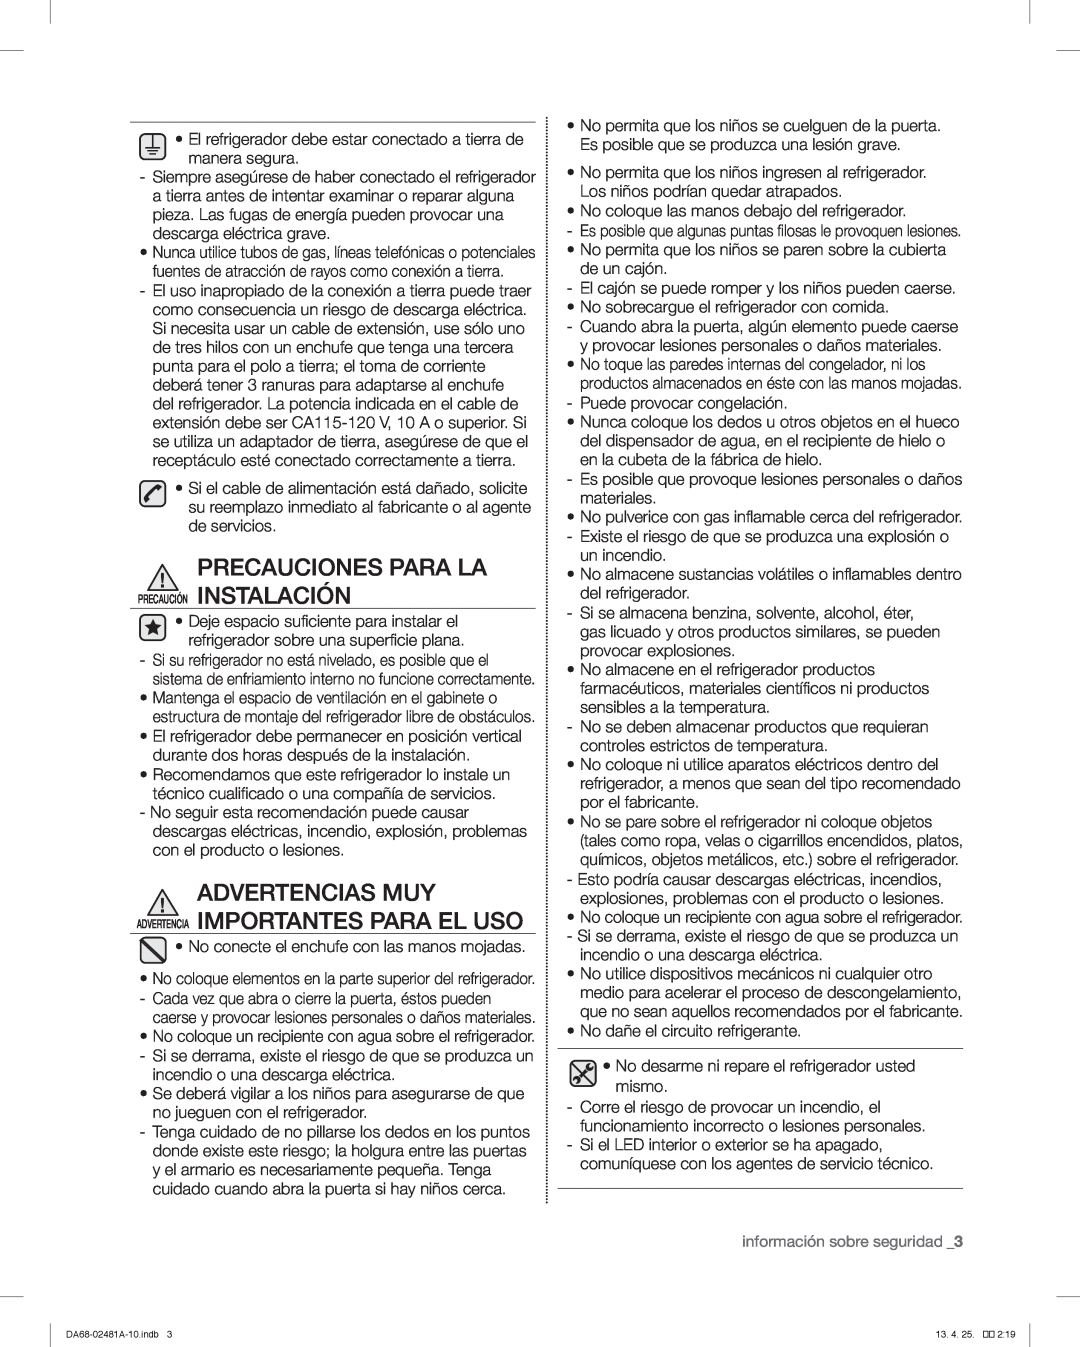 Samsung RF4267HARS, RF4267HABP user manual Advertencias Muy Advertencia Importantes Para El Uso, información sobre seguridad 